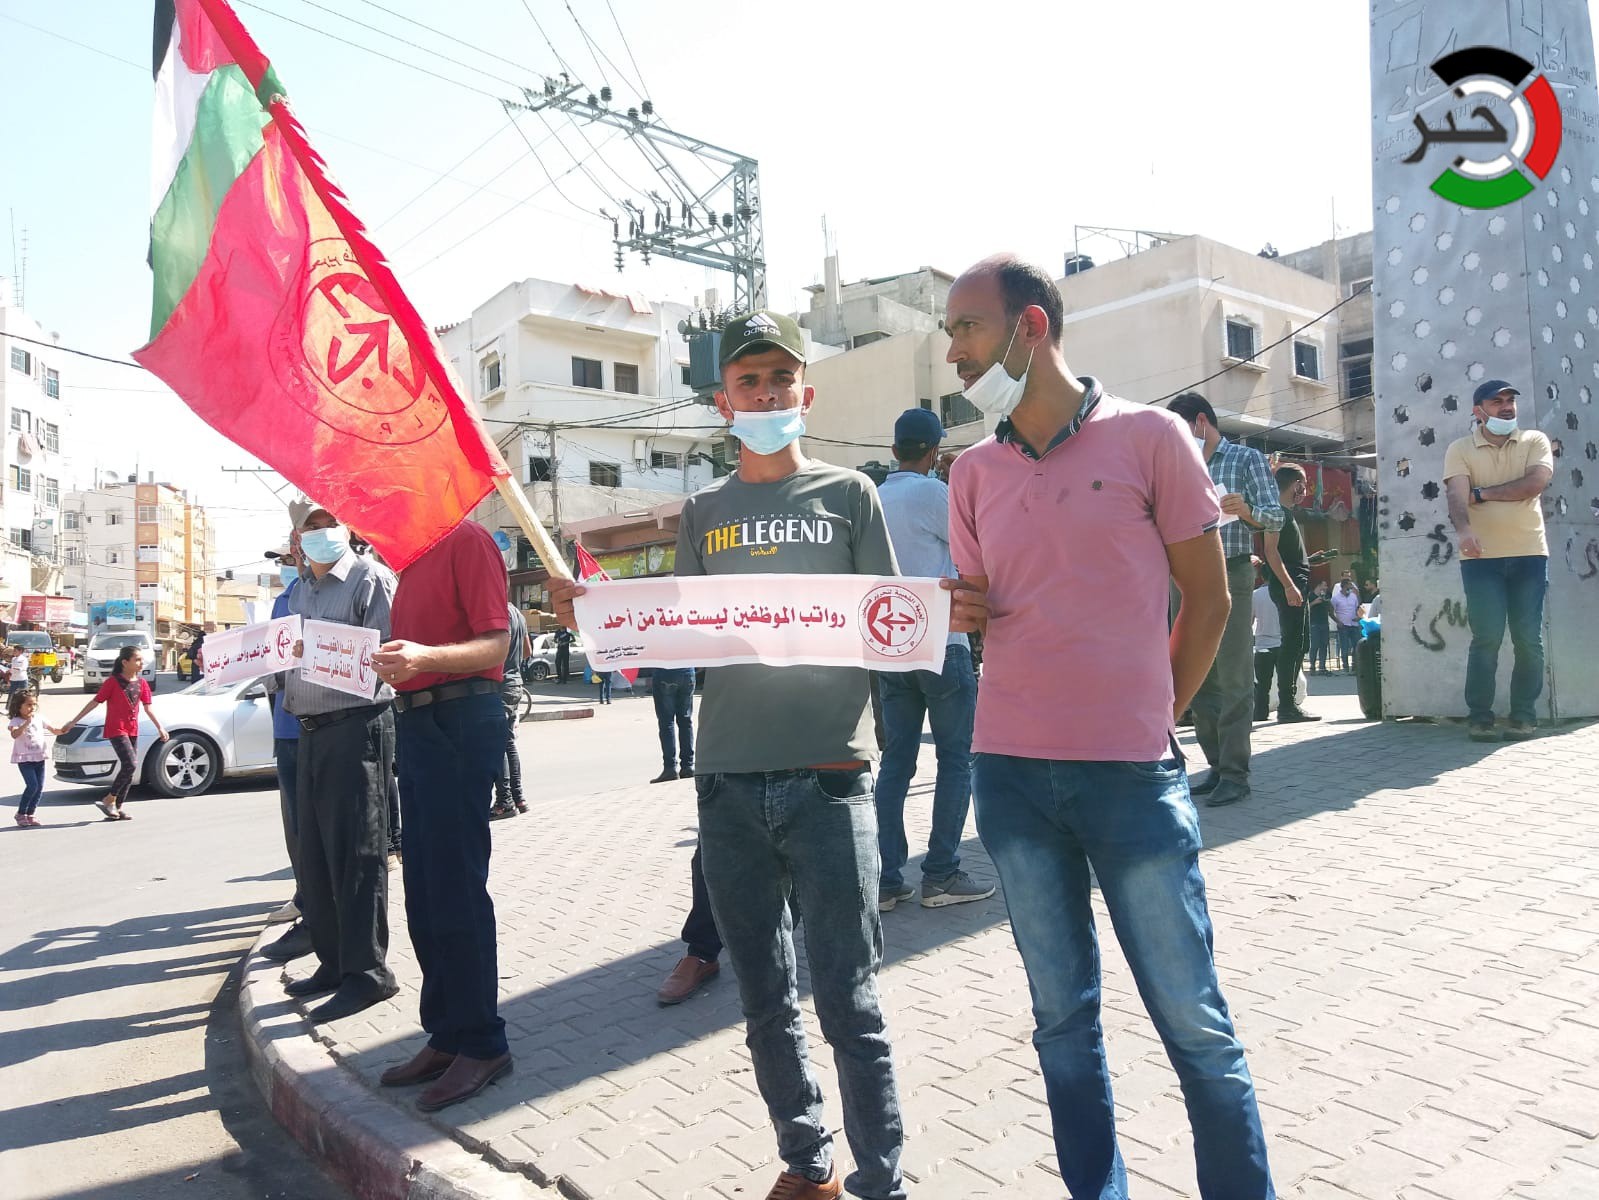 بالفيديو والصور: الشعبية تُنظم وقفات احتجاجية للمطالبة بوقف التمييز بين غزّة والضفة